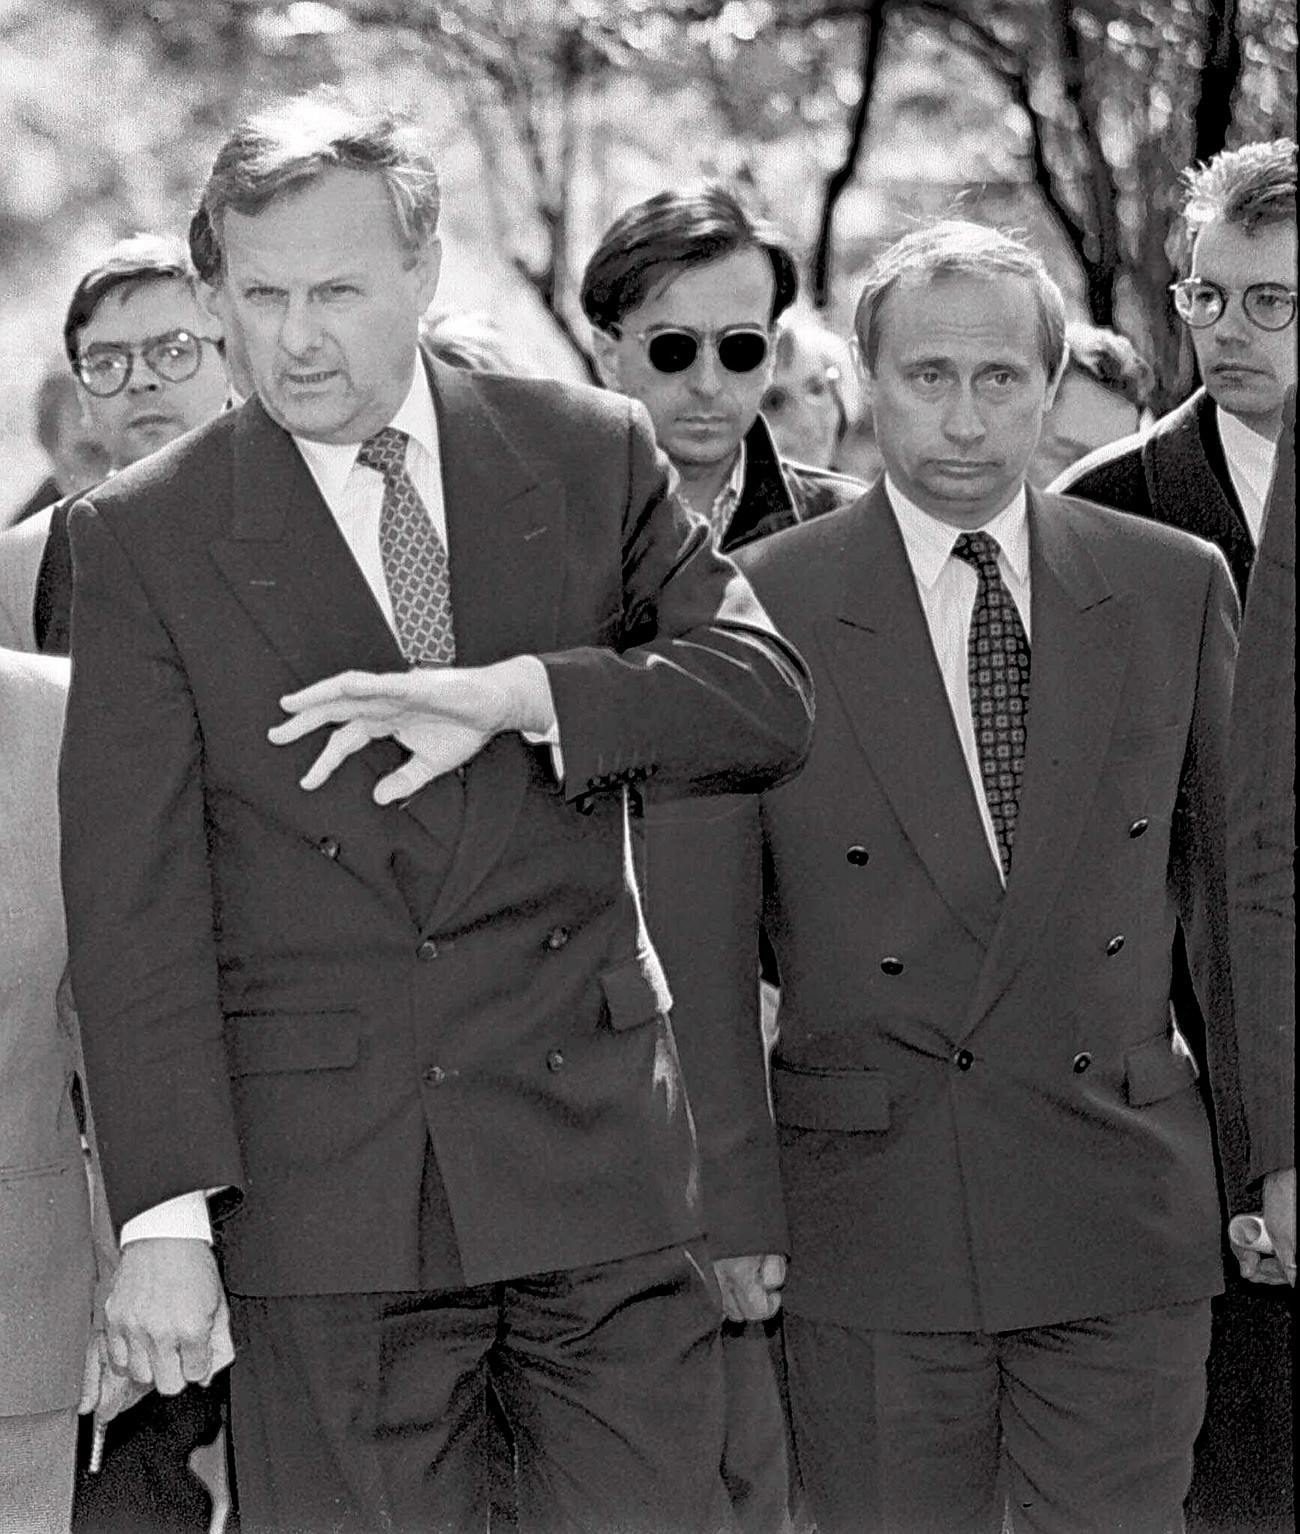 Анатолиј Сопчак, градоначелник Санкт Петербурга (лево), са Владимиром Путином, замеником градоначелника, у Санкт Петербургу на фотографији из 1994. године